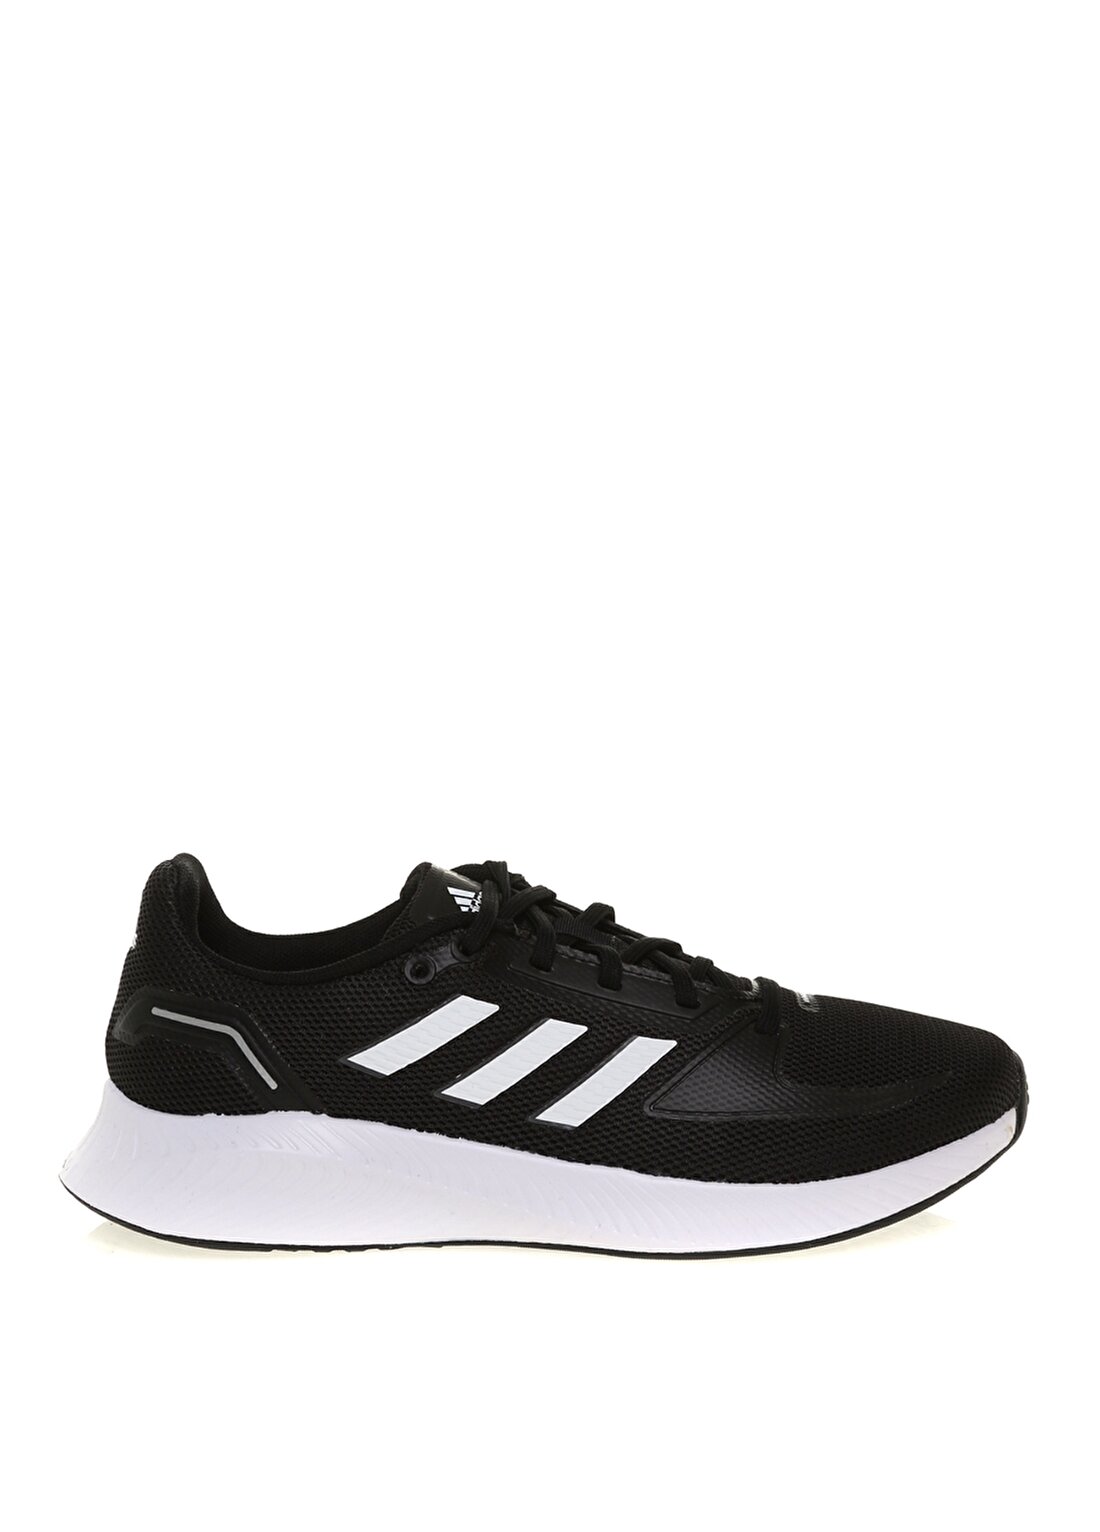 Adidas Siyah - Beyaz - Gri Kadın Koşu Ayakkabısı FY5946 RUNFALCON 2